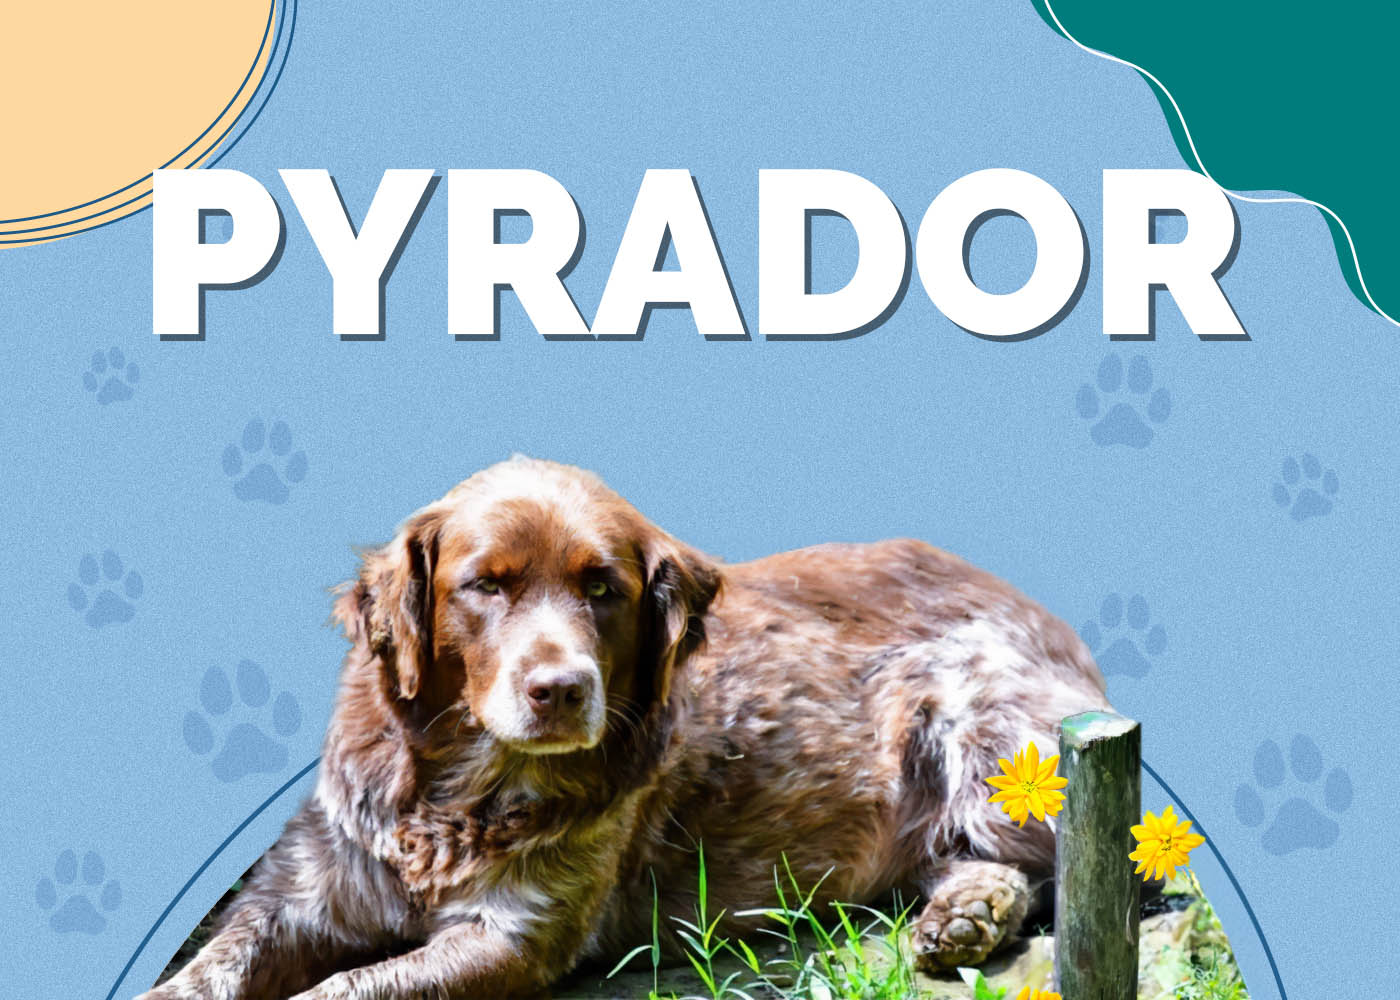 Pyrador (Labrador & Great Pyrenees Mix)